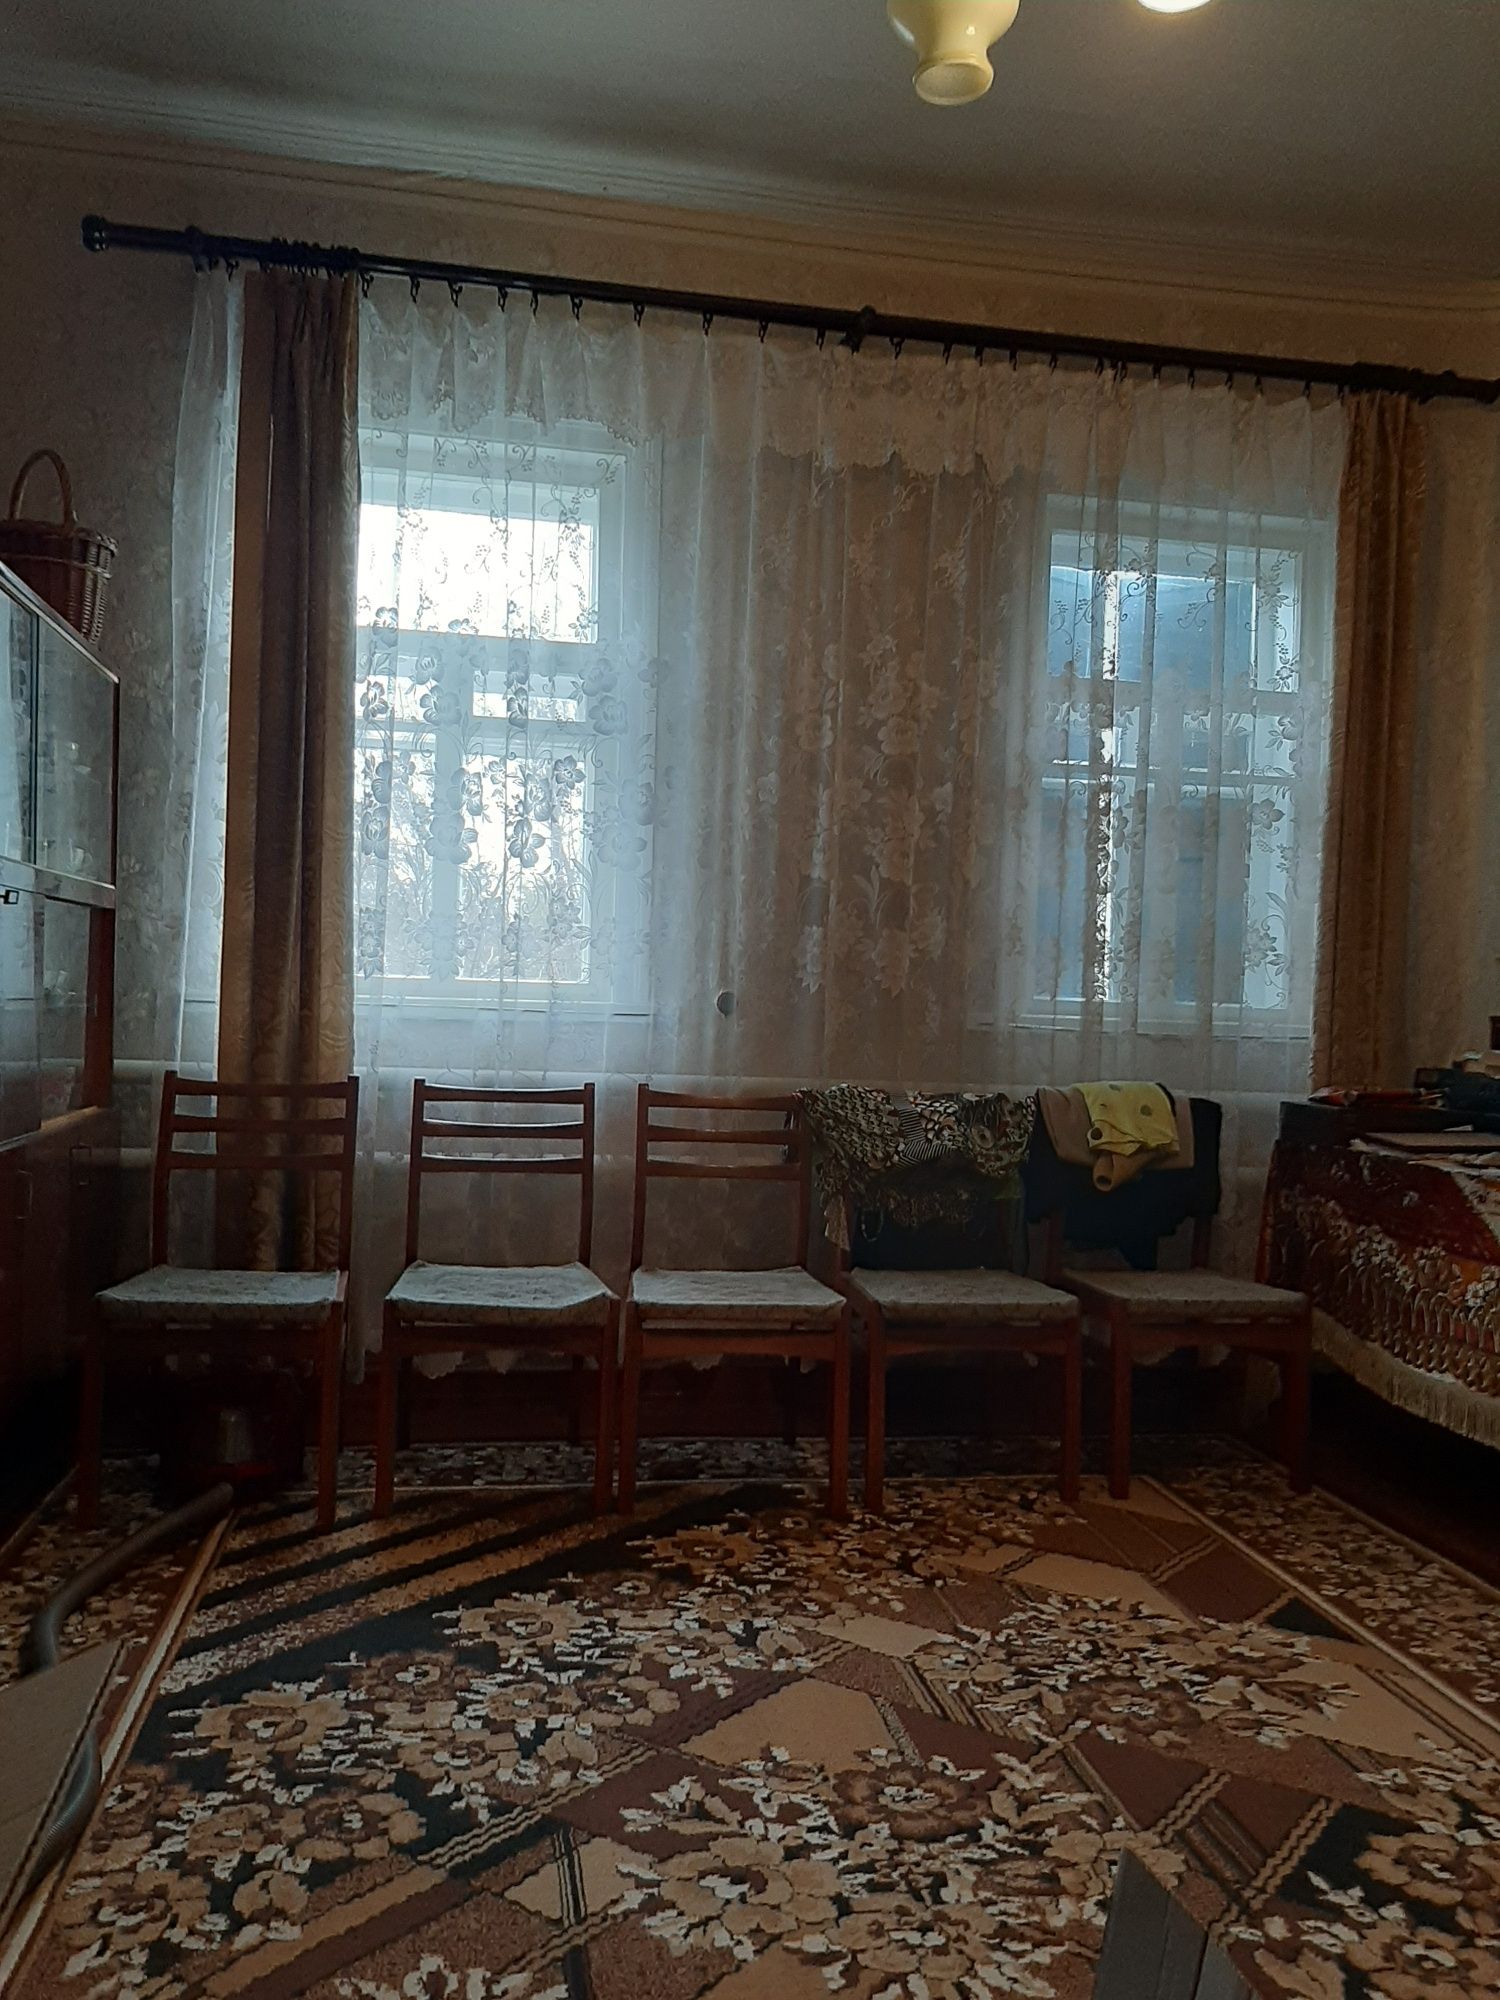 Продам  добротный дом в Старой Покровке  Чугуевский р-он!